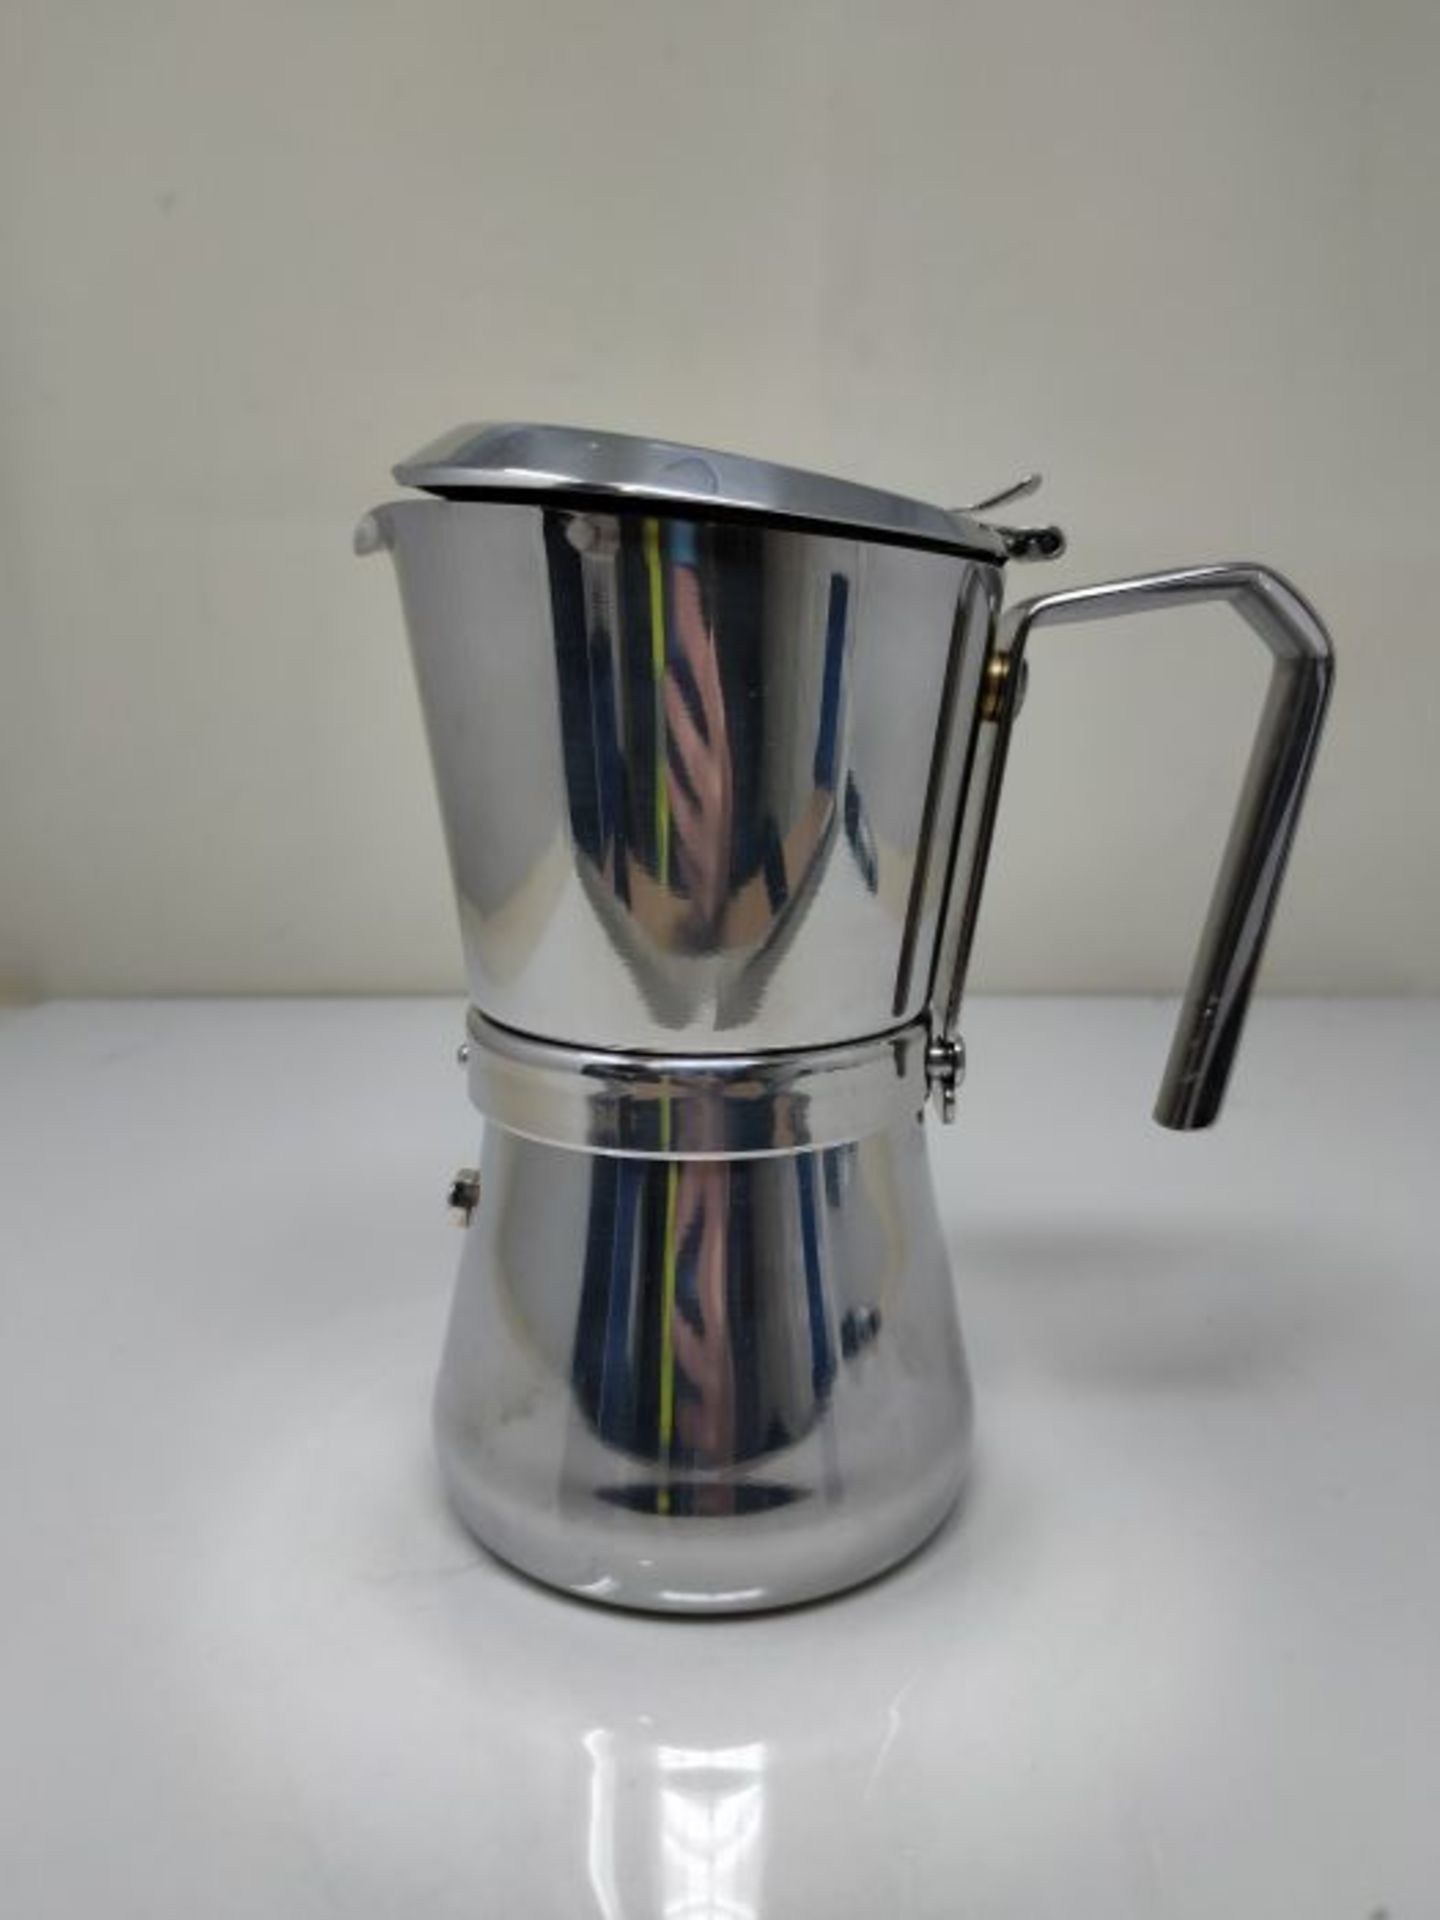 RRP £89.00 Giannini 103 Espresso Maker, Silver - Image 3 of 3